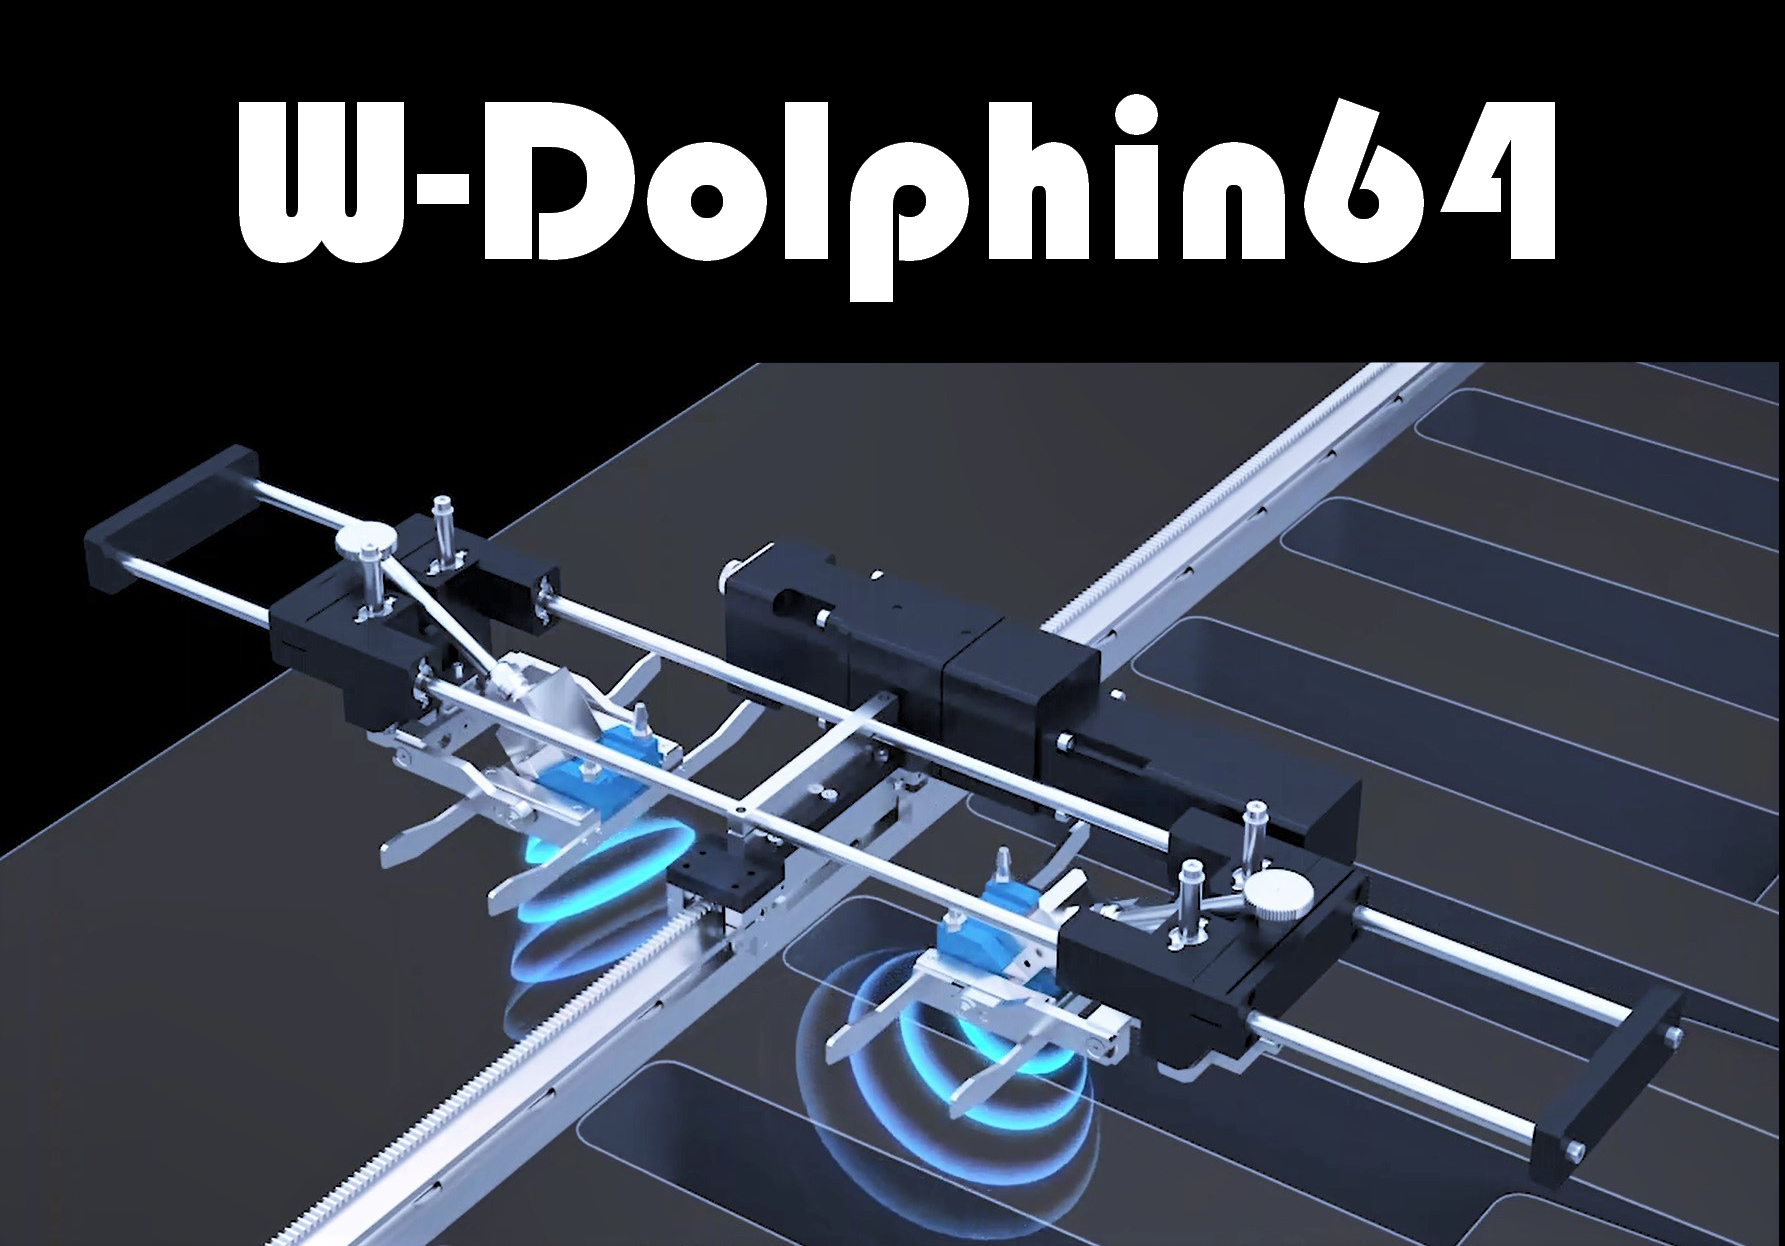 フェーズドアレイ超音波探傷技術「W-Dolphin64」